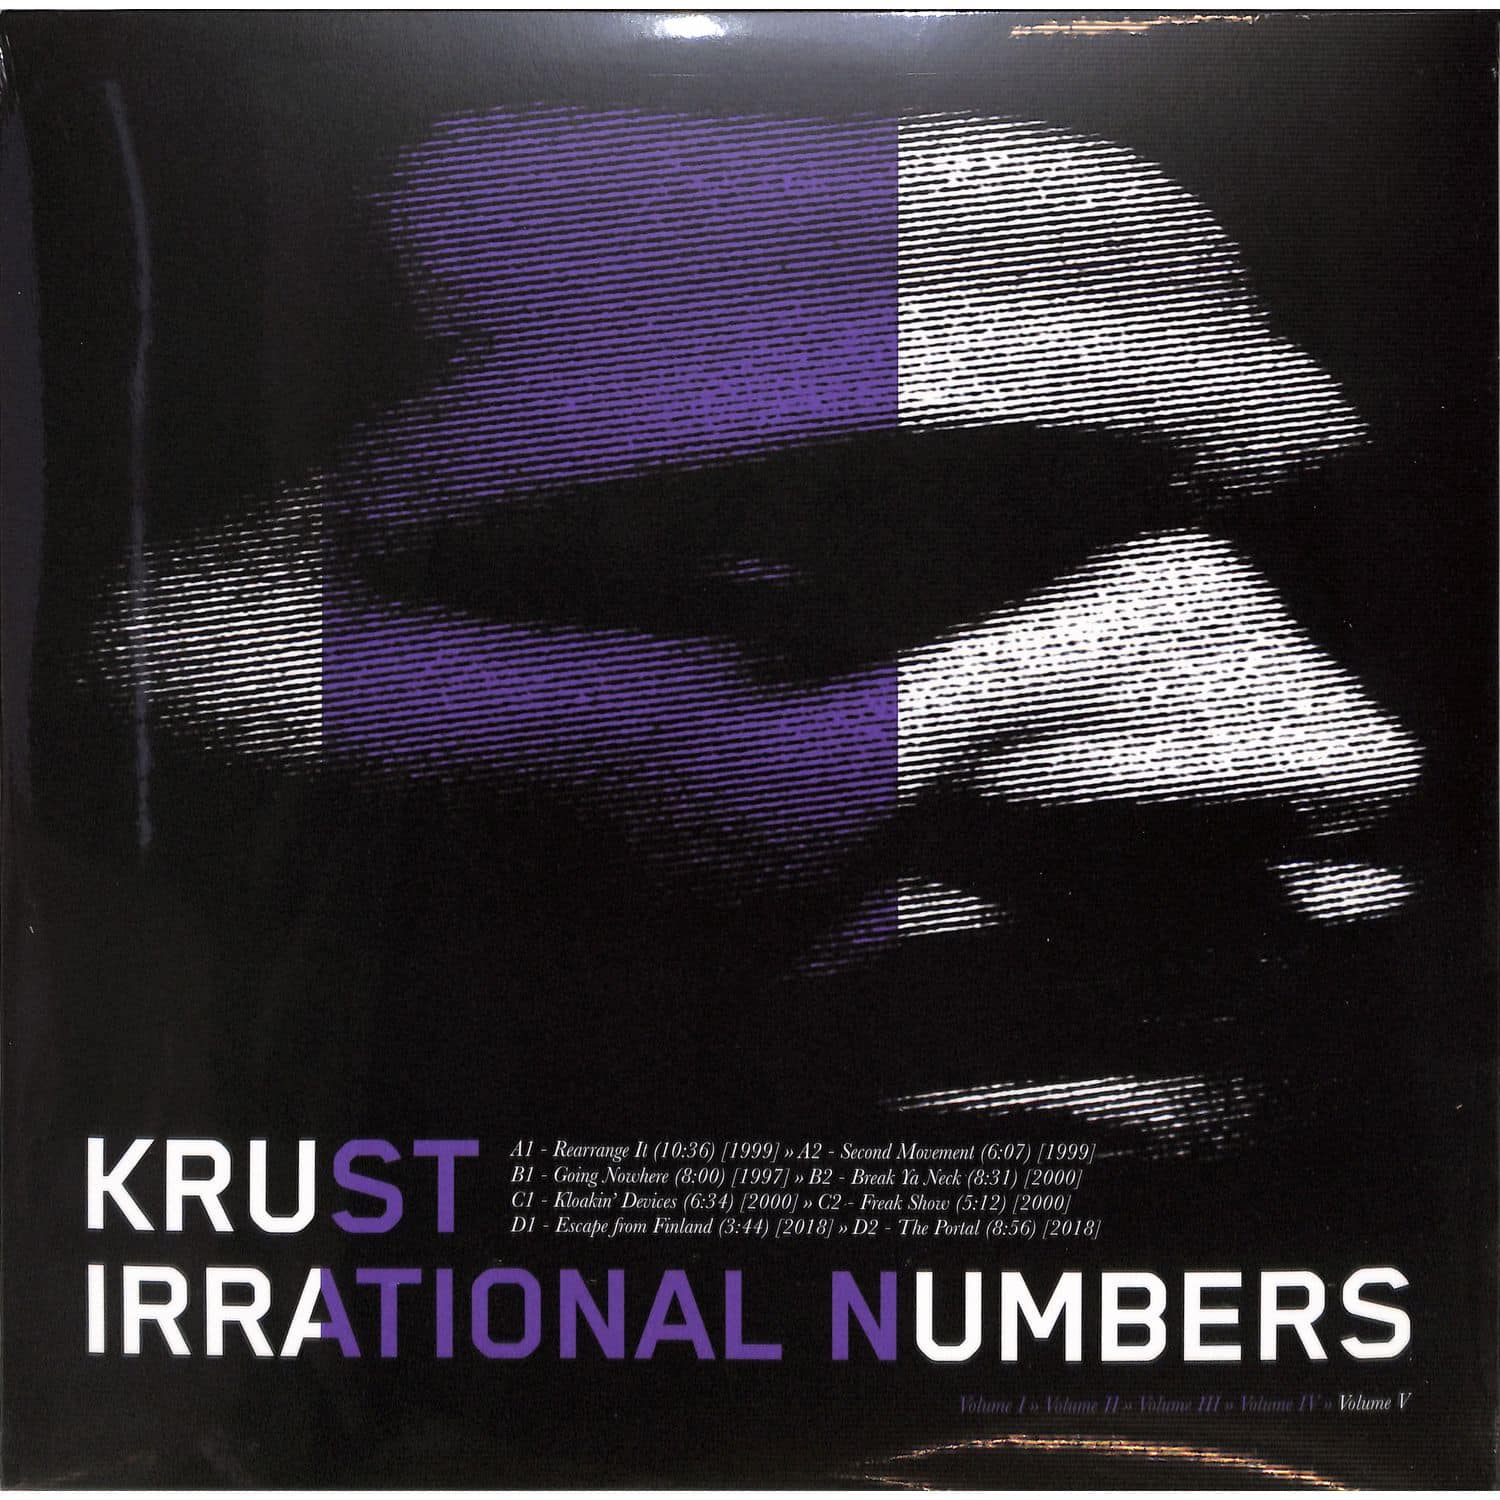 Krust - IRRATIONAL NUMBERS VOLUME 5 